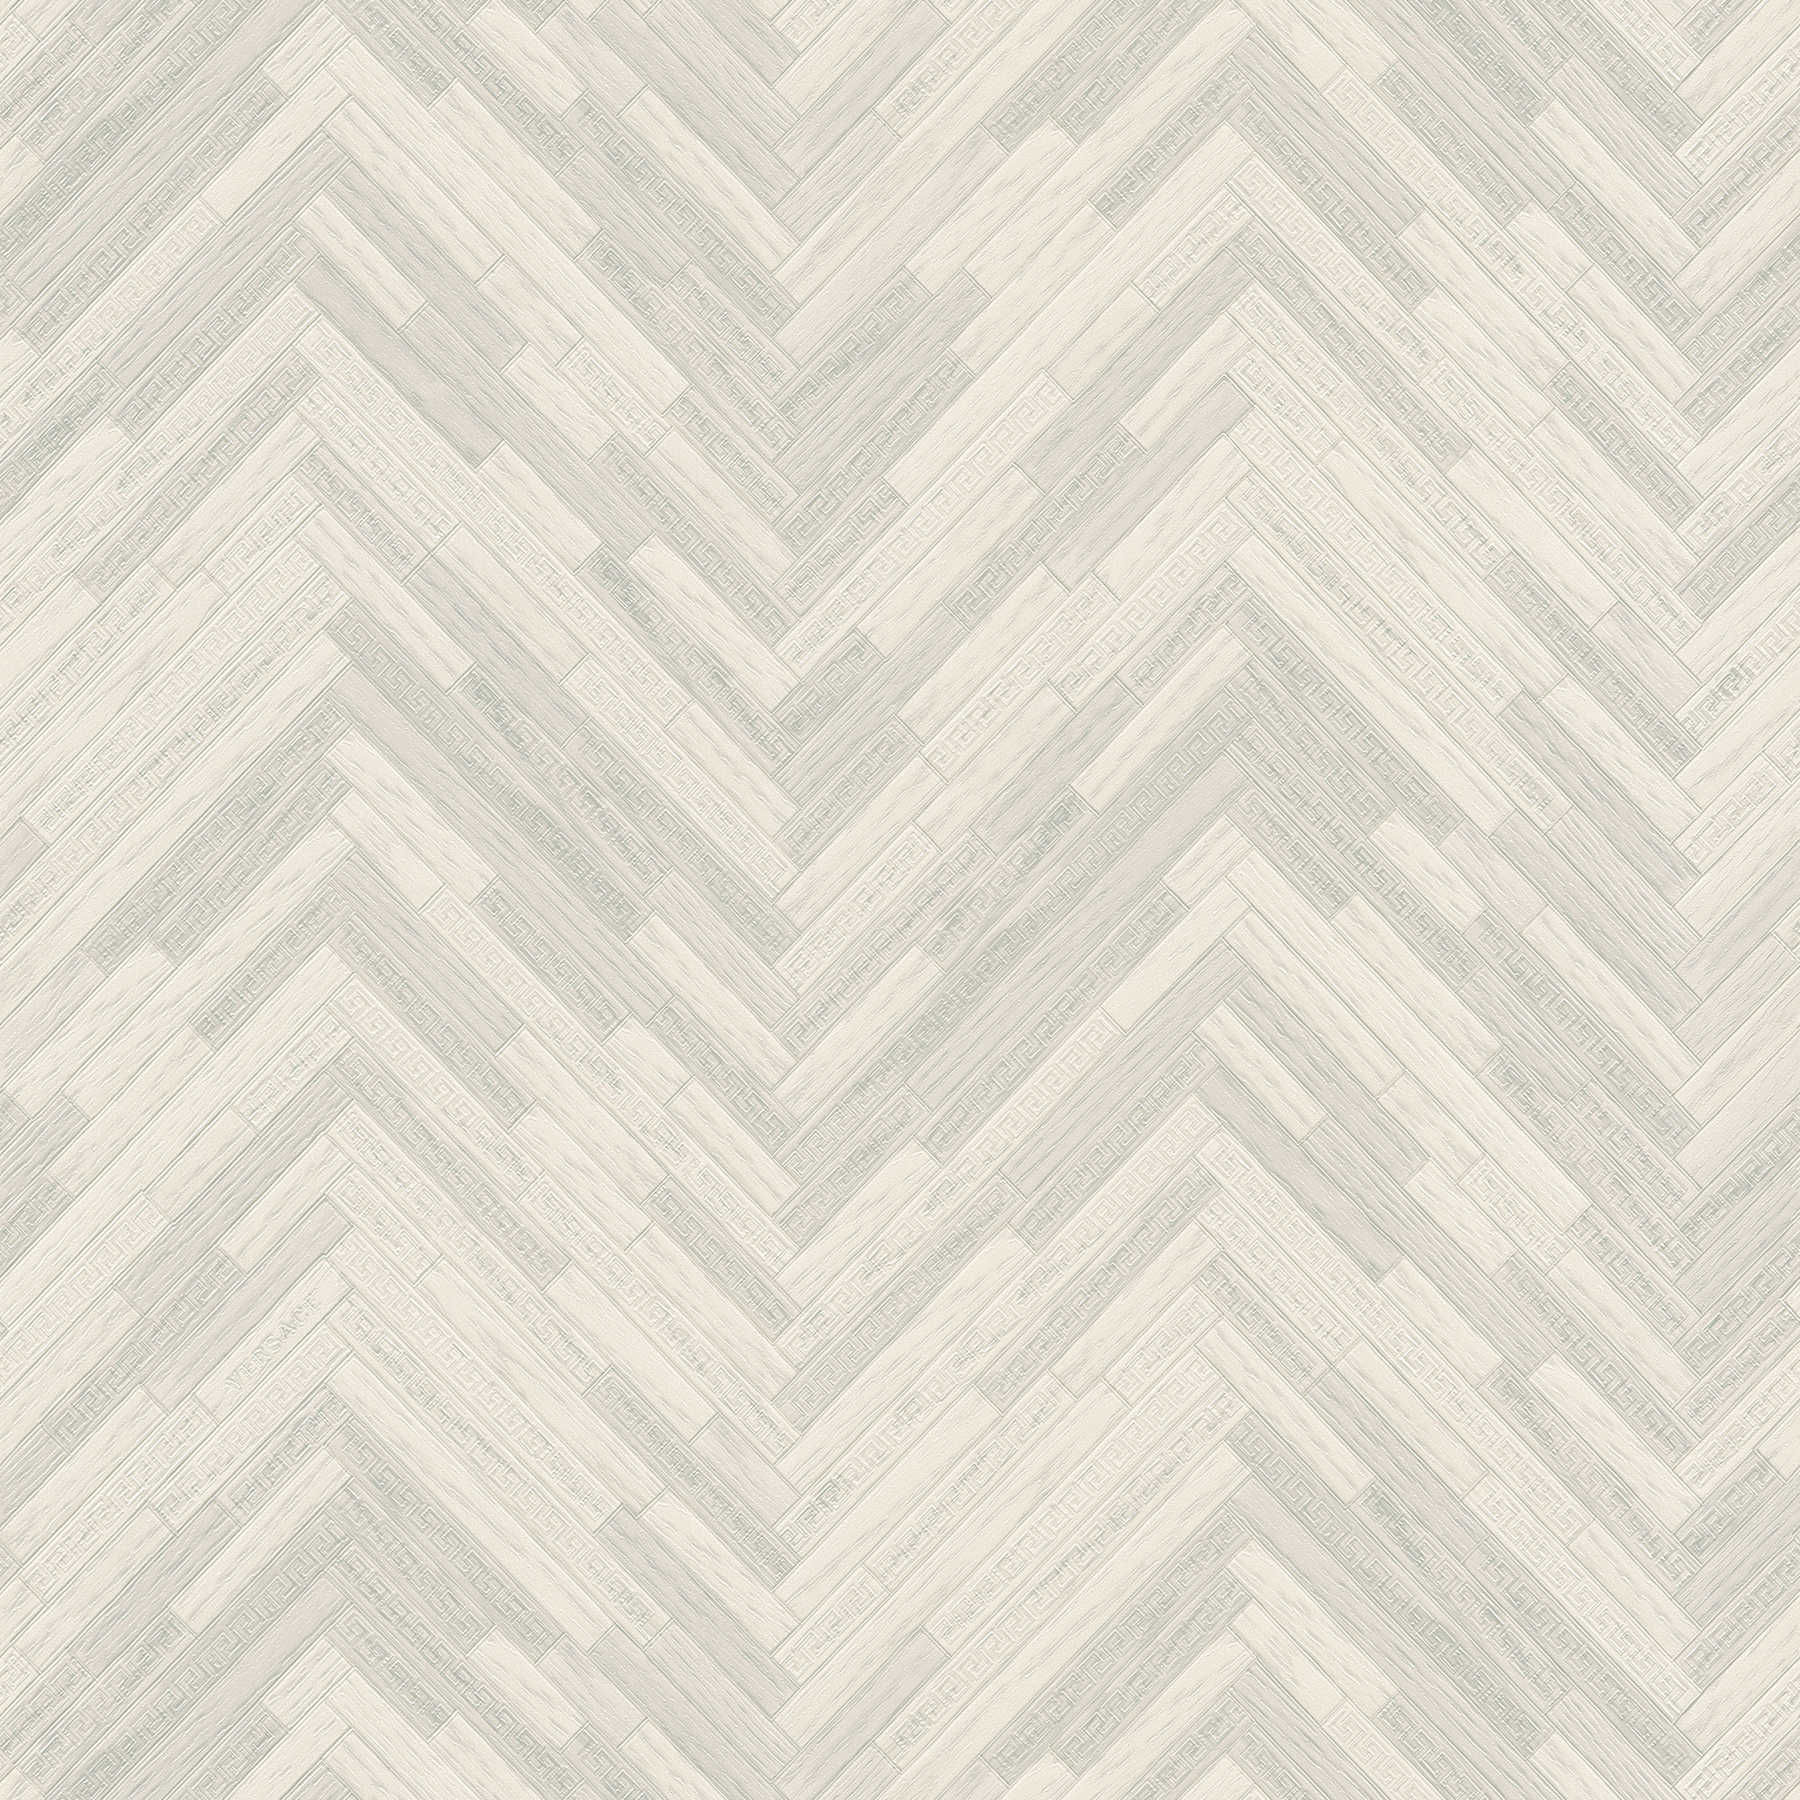 VERSACE Home wallpaper elegant wood look - grey, white
